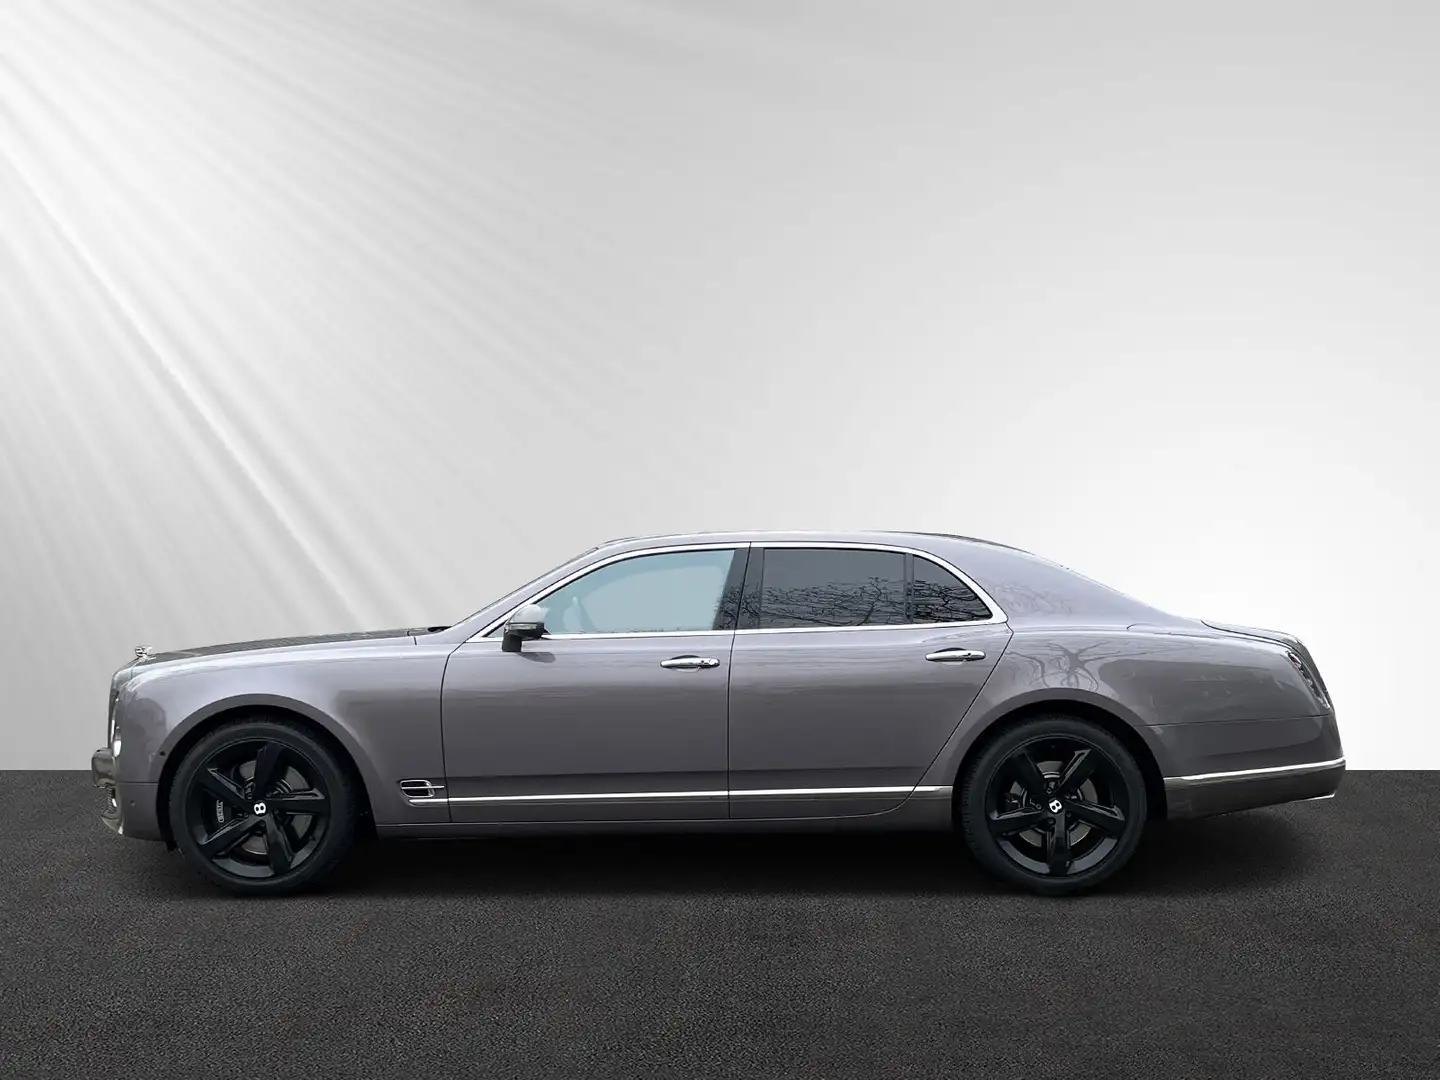 Bentley Mulsanne 6.8 Speed, Carbon, neuer Service siva - 2